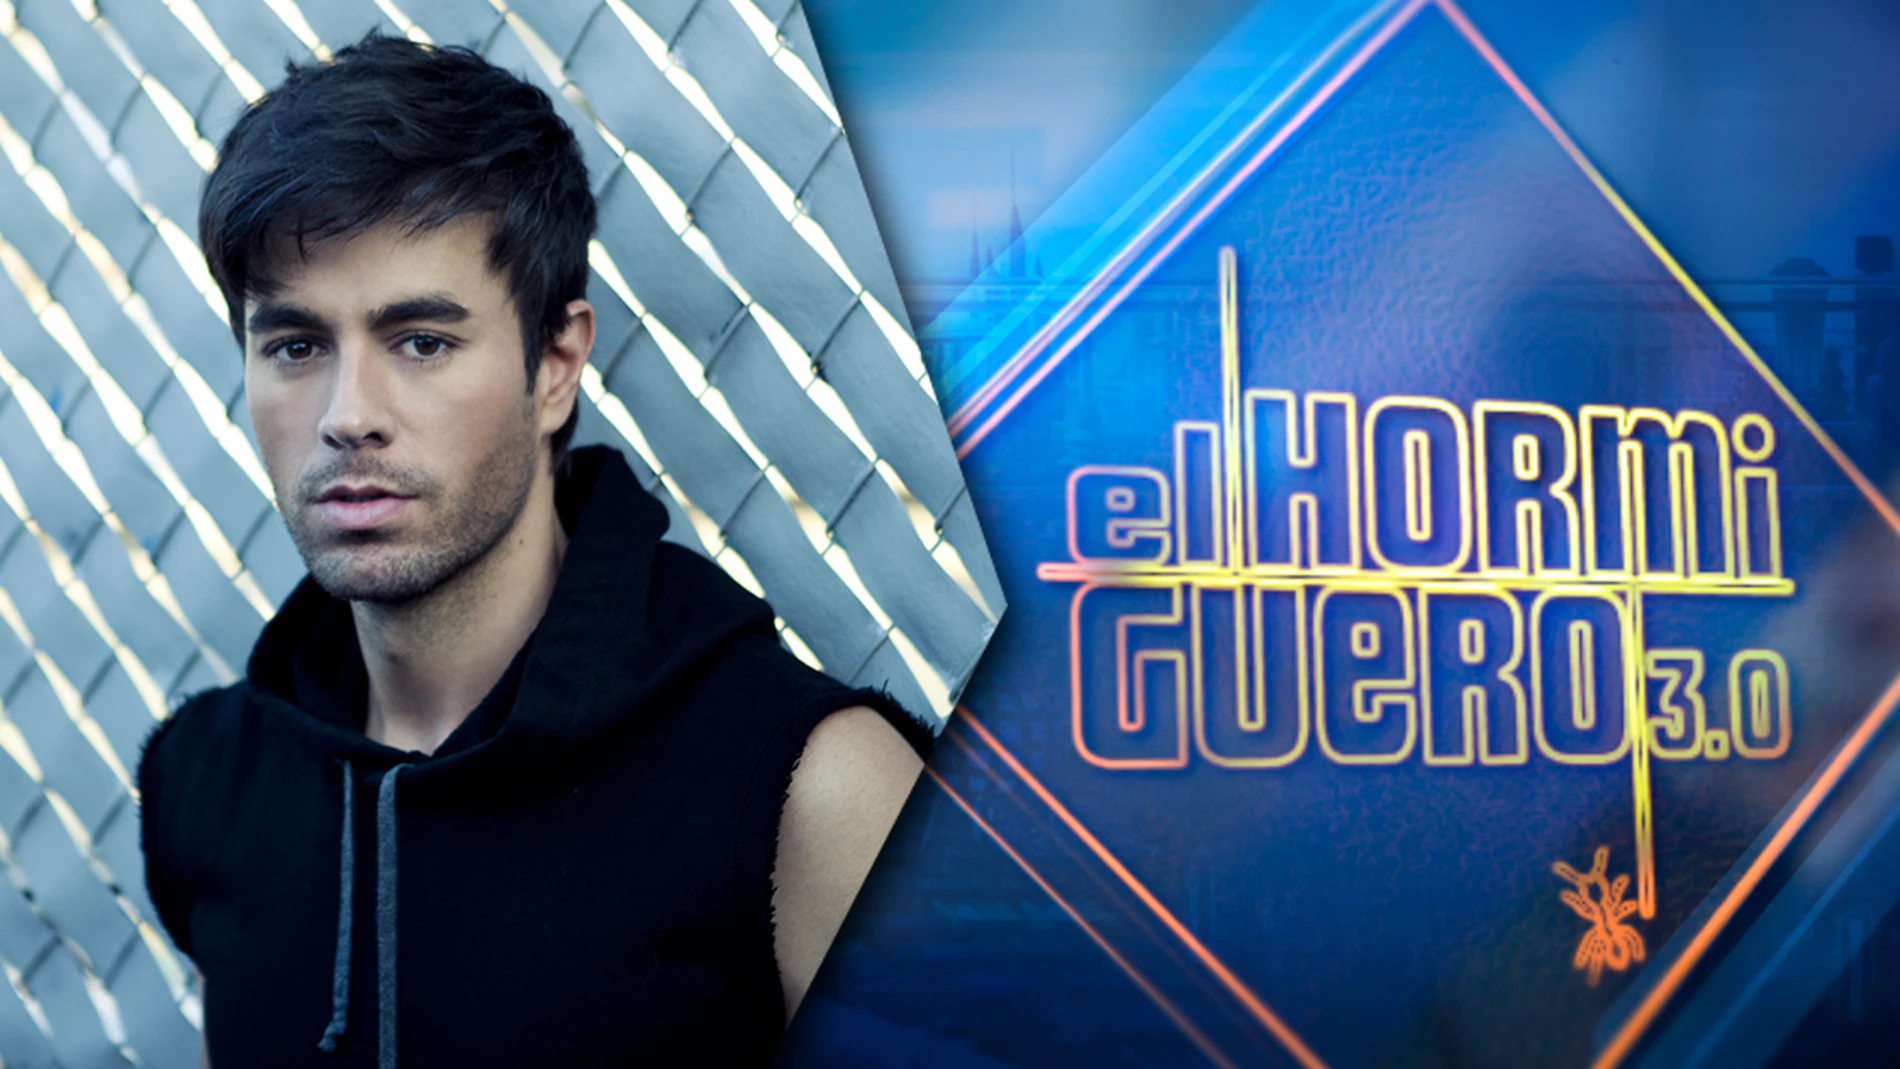 Enrique Iglesias presenta su nuevo disco en &#39;El Hormiguero 3.0&#39; el jueves